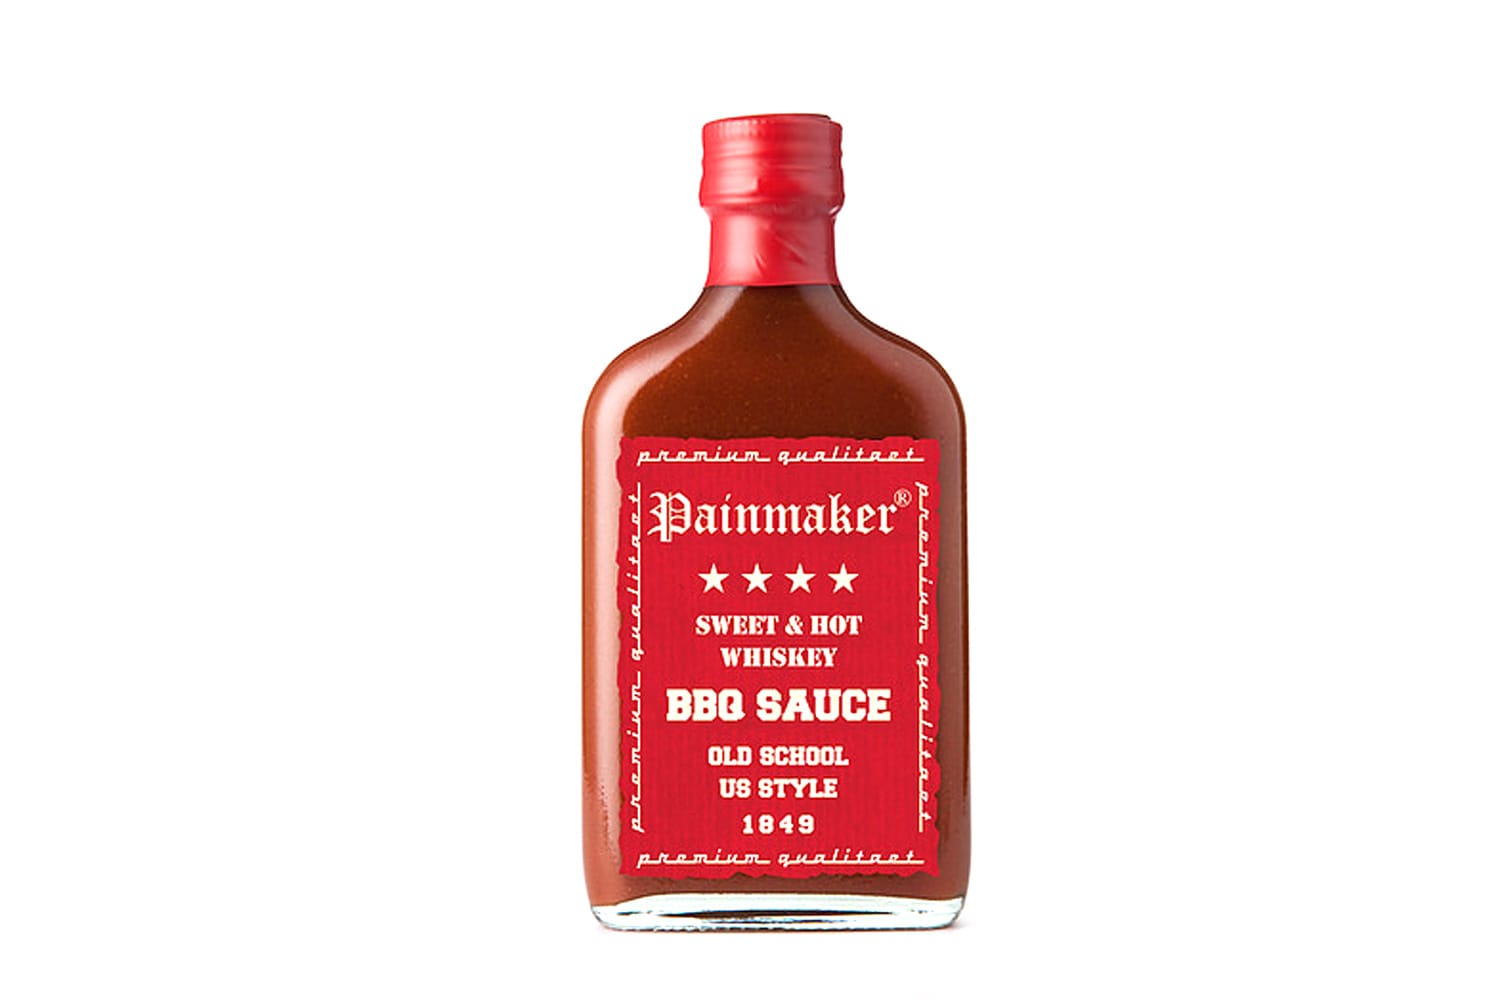 Ein Schluck Whiskey gibt der US Style BBQ Sauce von Painmaker (200ml um 5,50 Euro) ihren einzigartigen Kick.